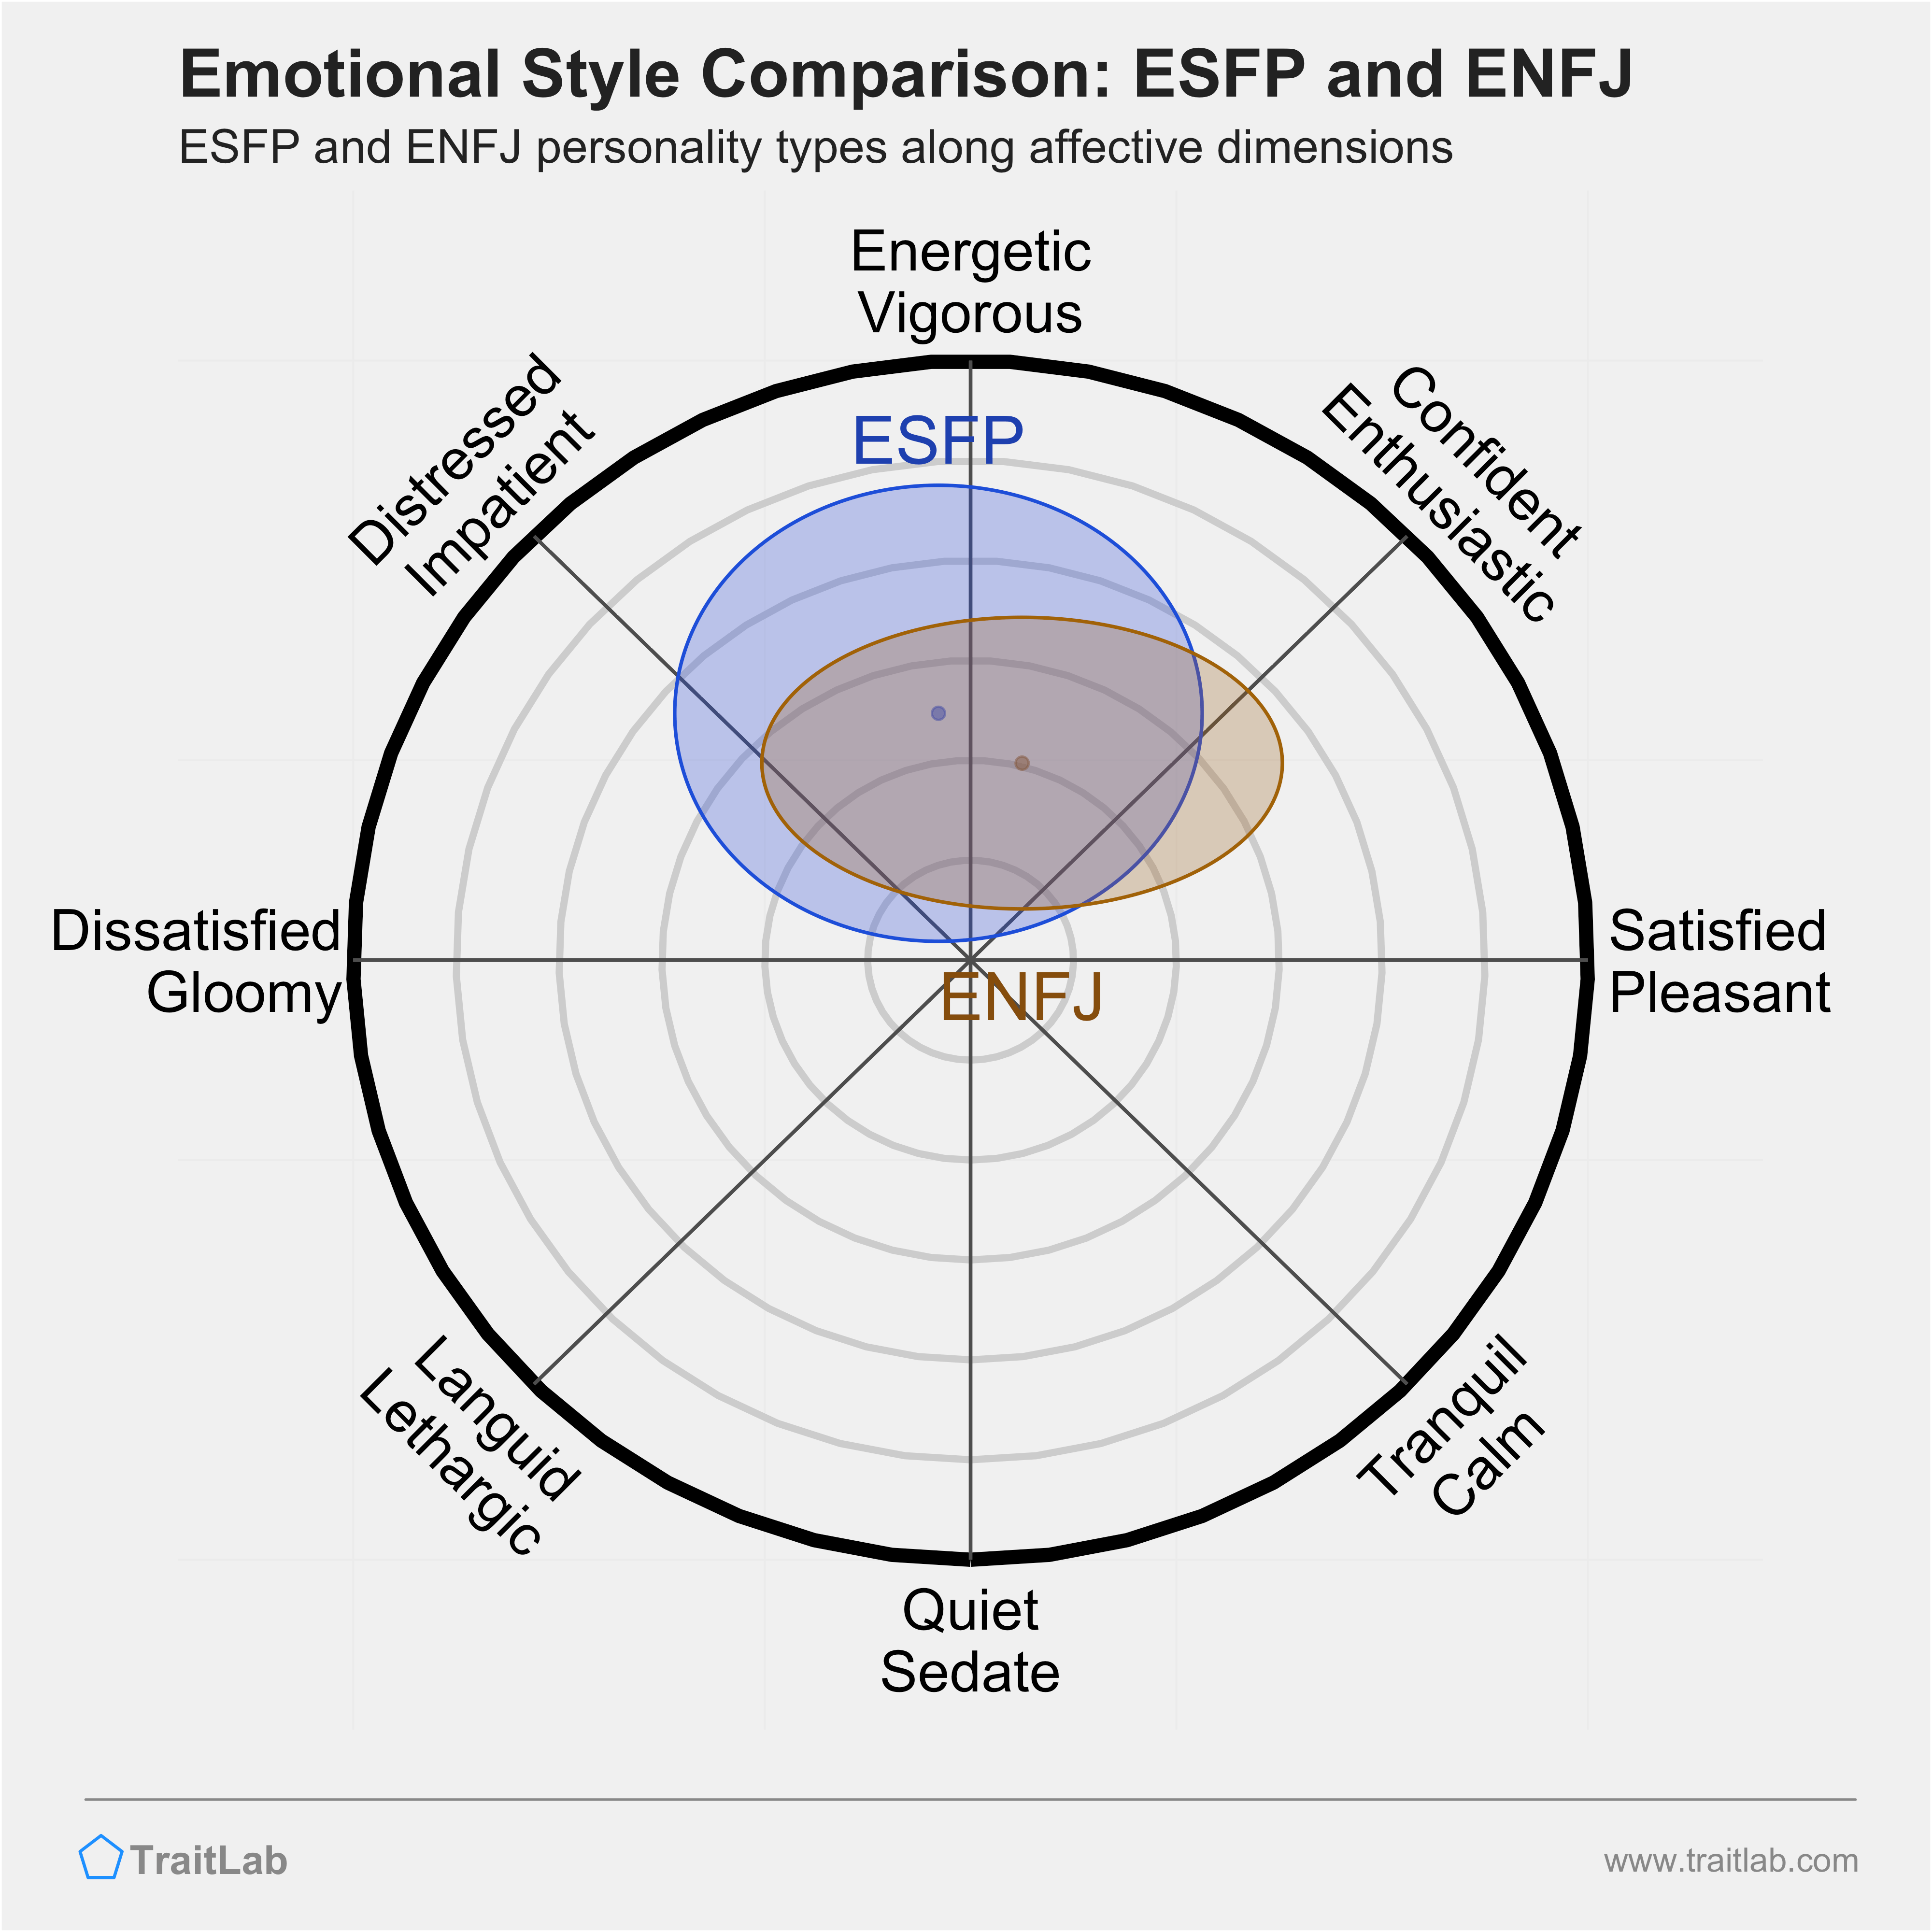 ESFP and ENFJ comparison across emotional (affective) dimensions